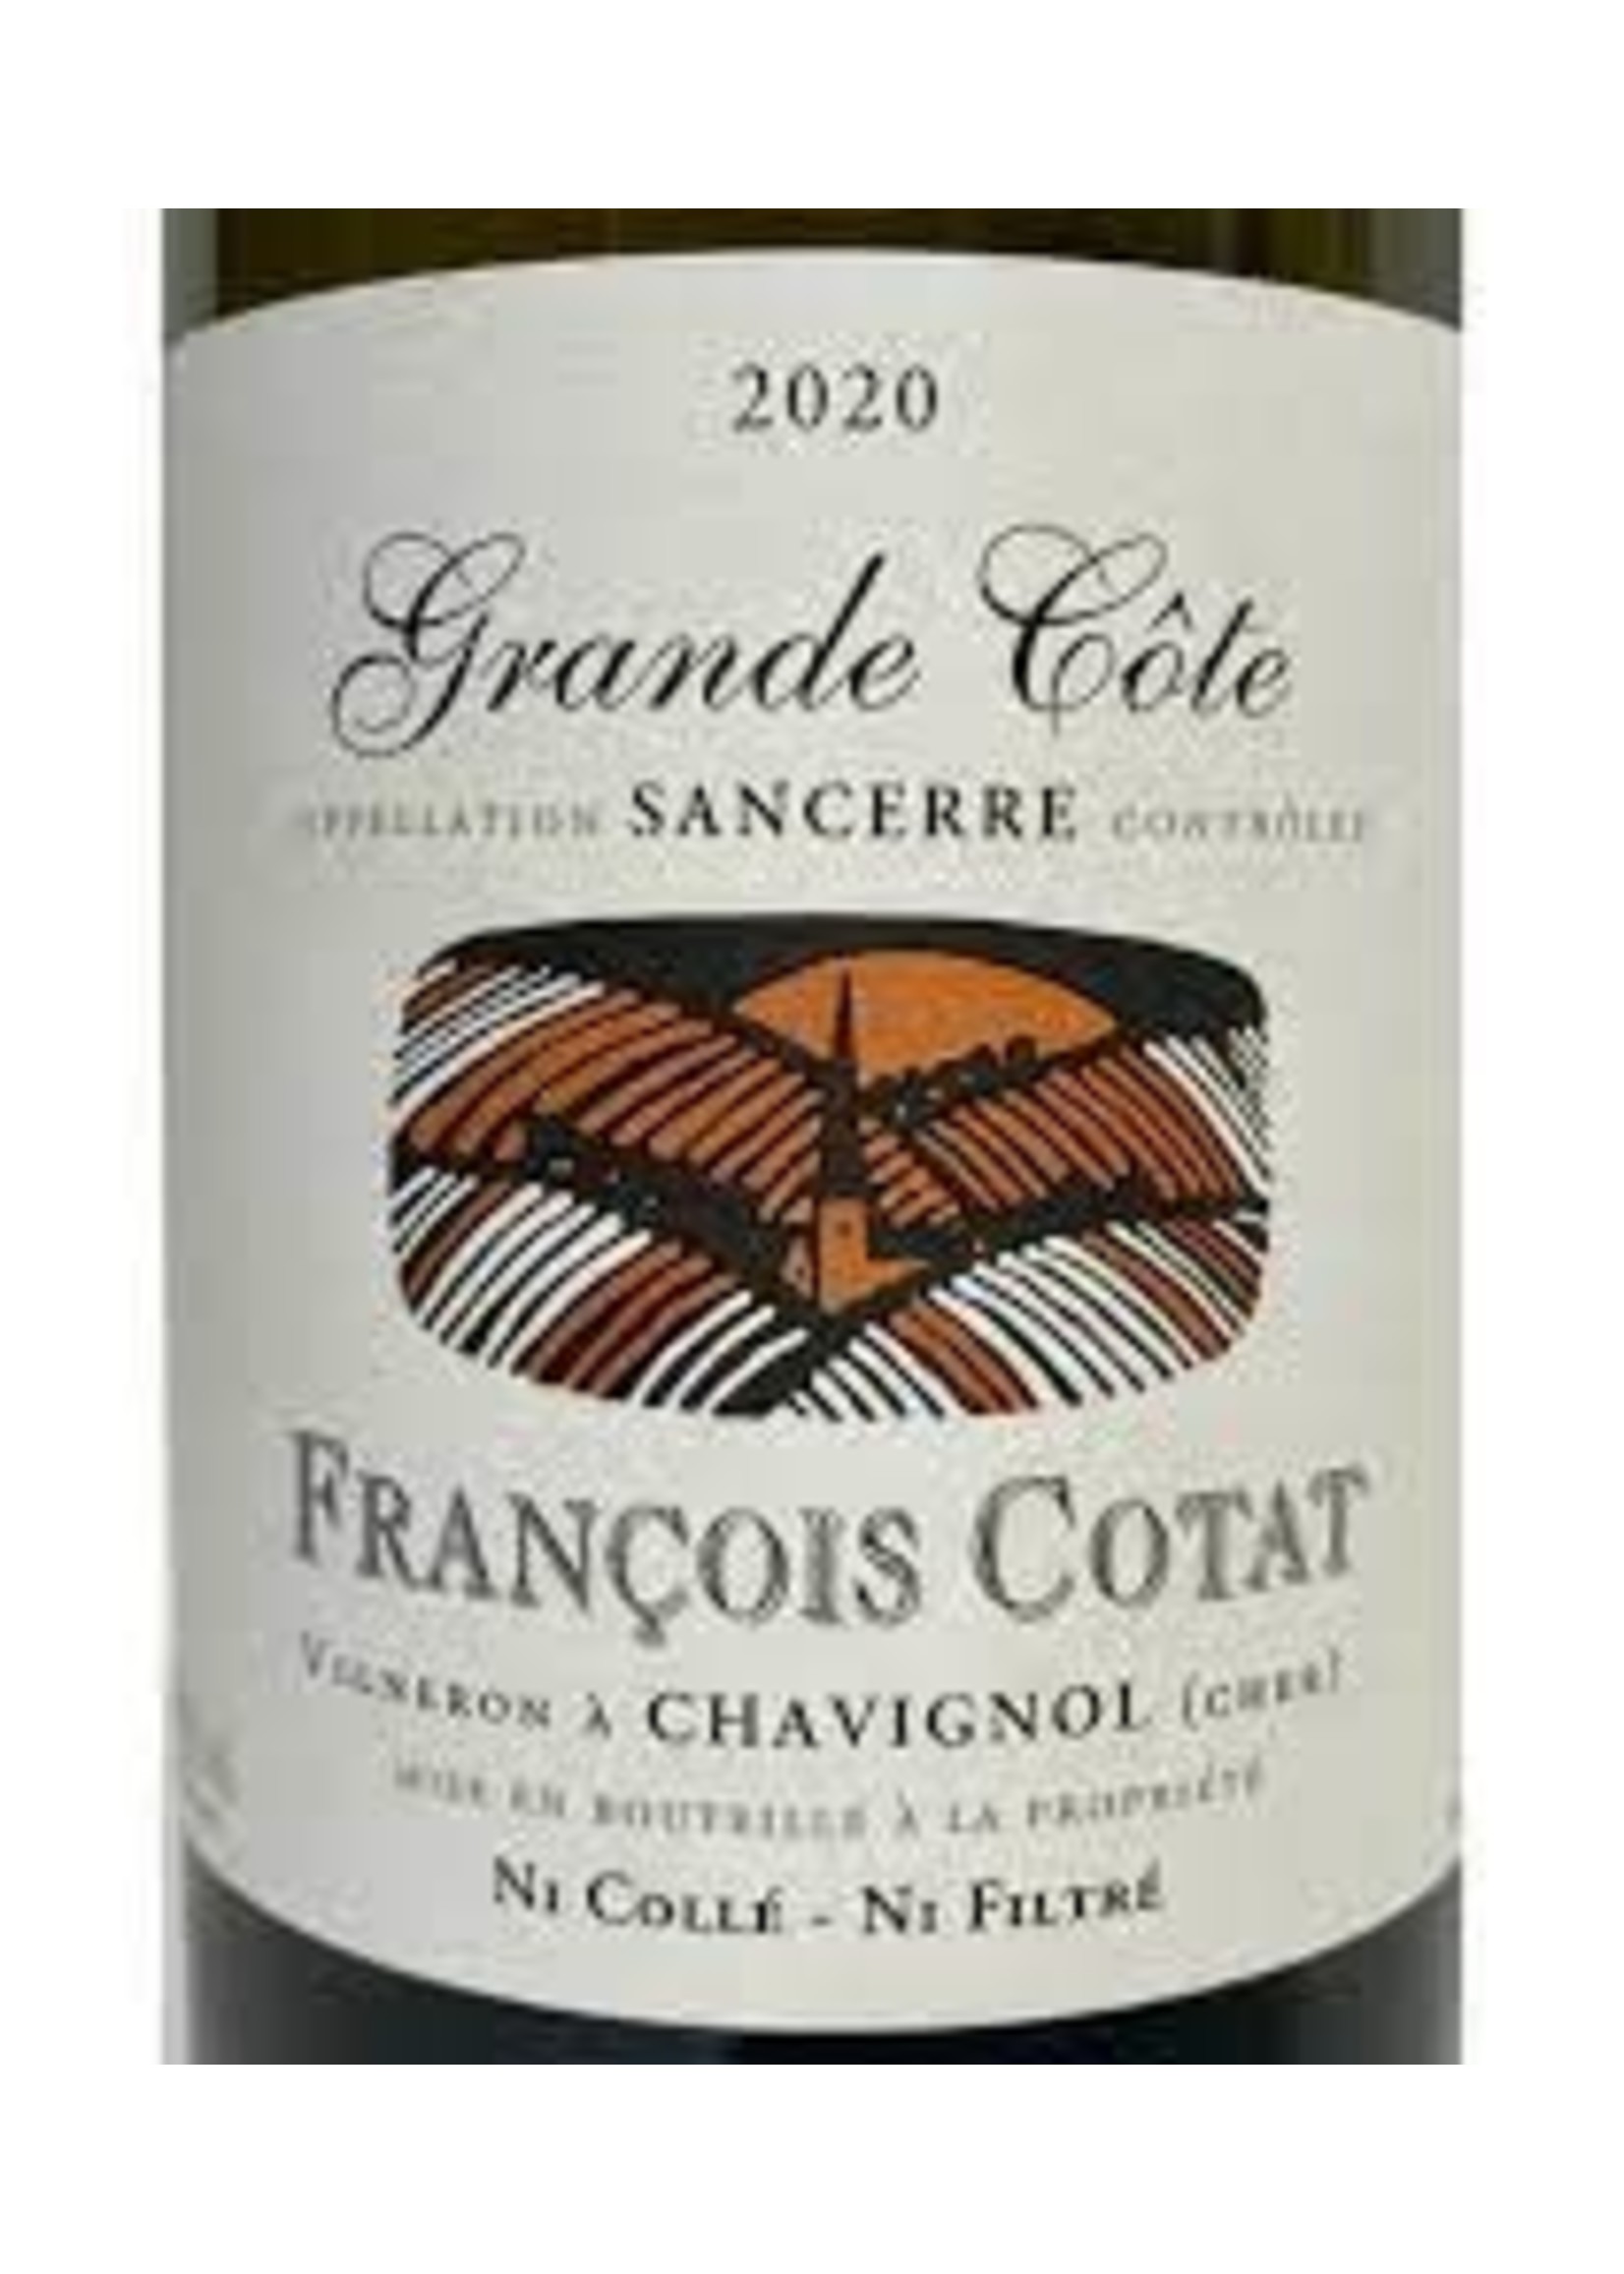 Francois Cotat 2020 Sancerre Blanc Grande Cote 750ml